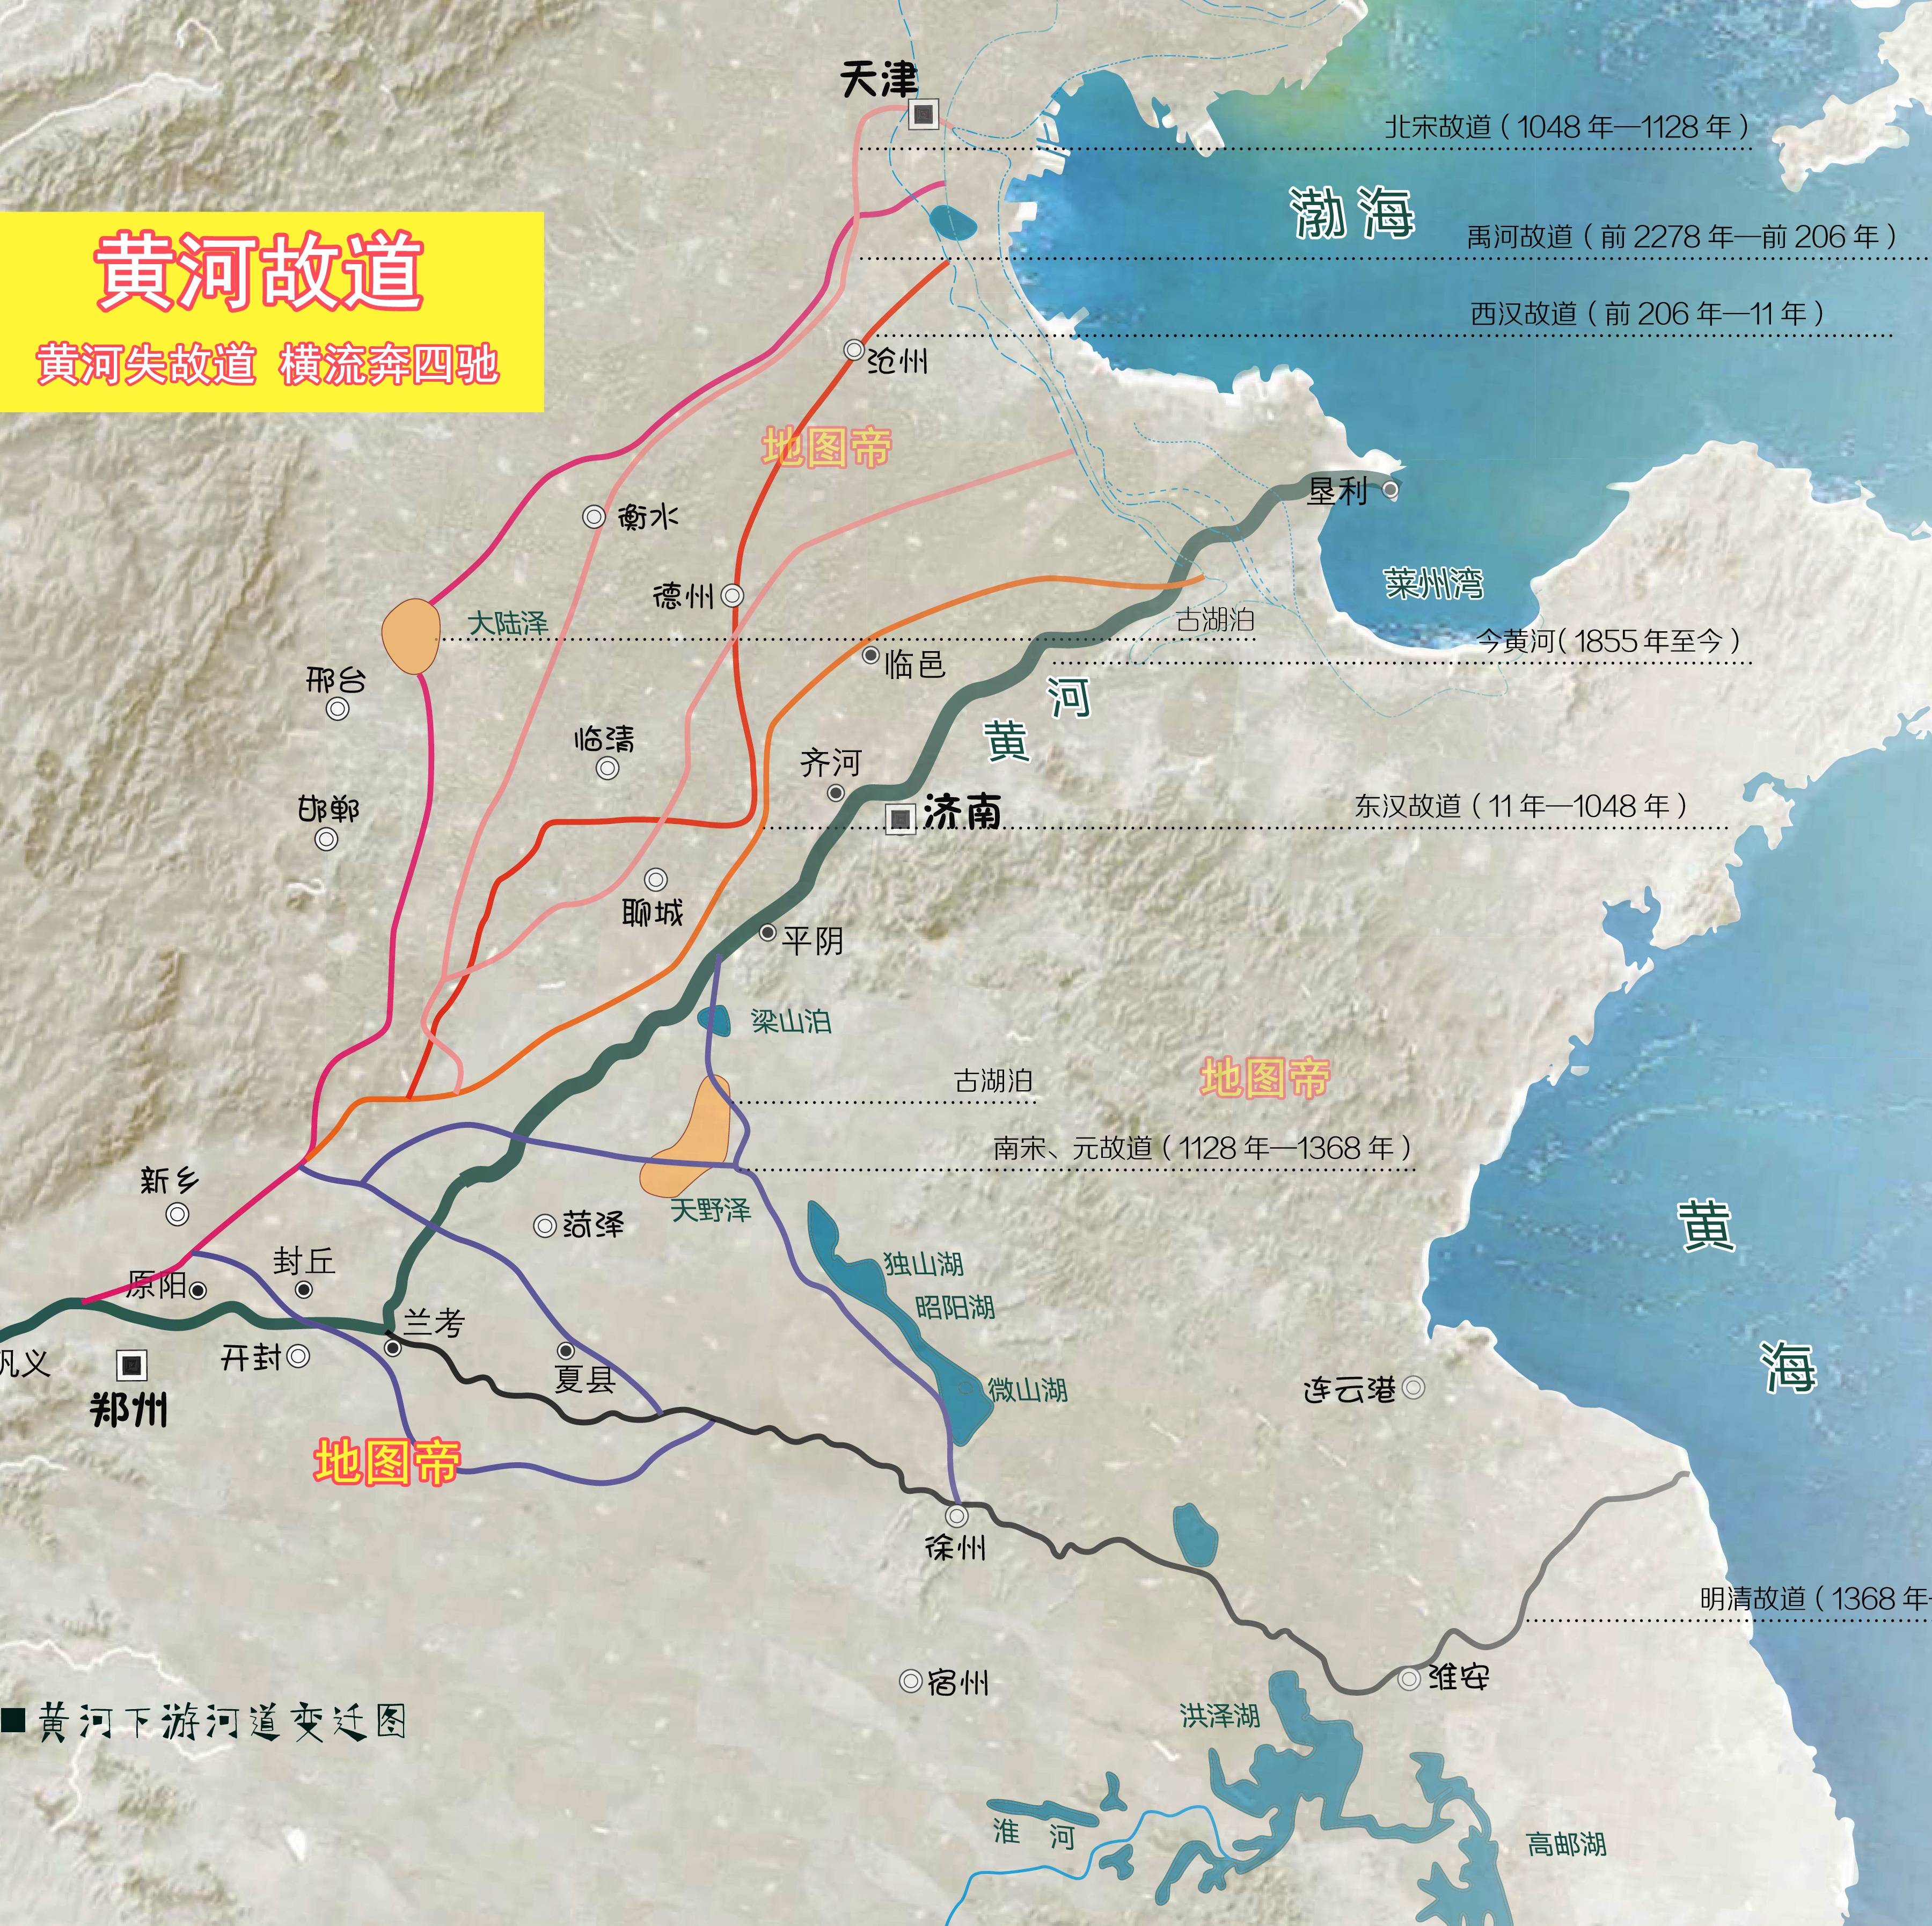 原创东营每年增加30平方千米,黄河会填平渤海吗?